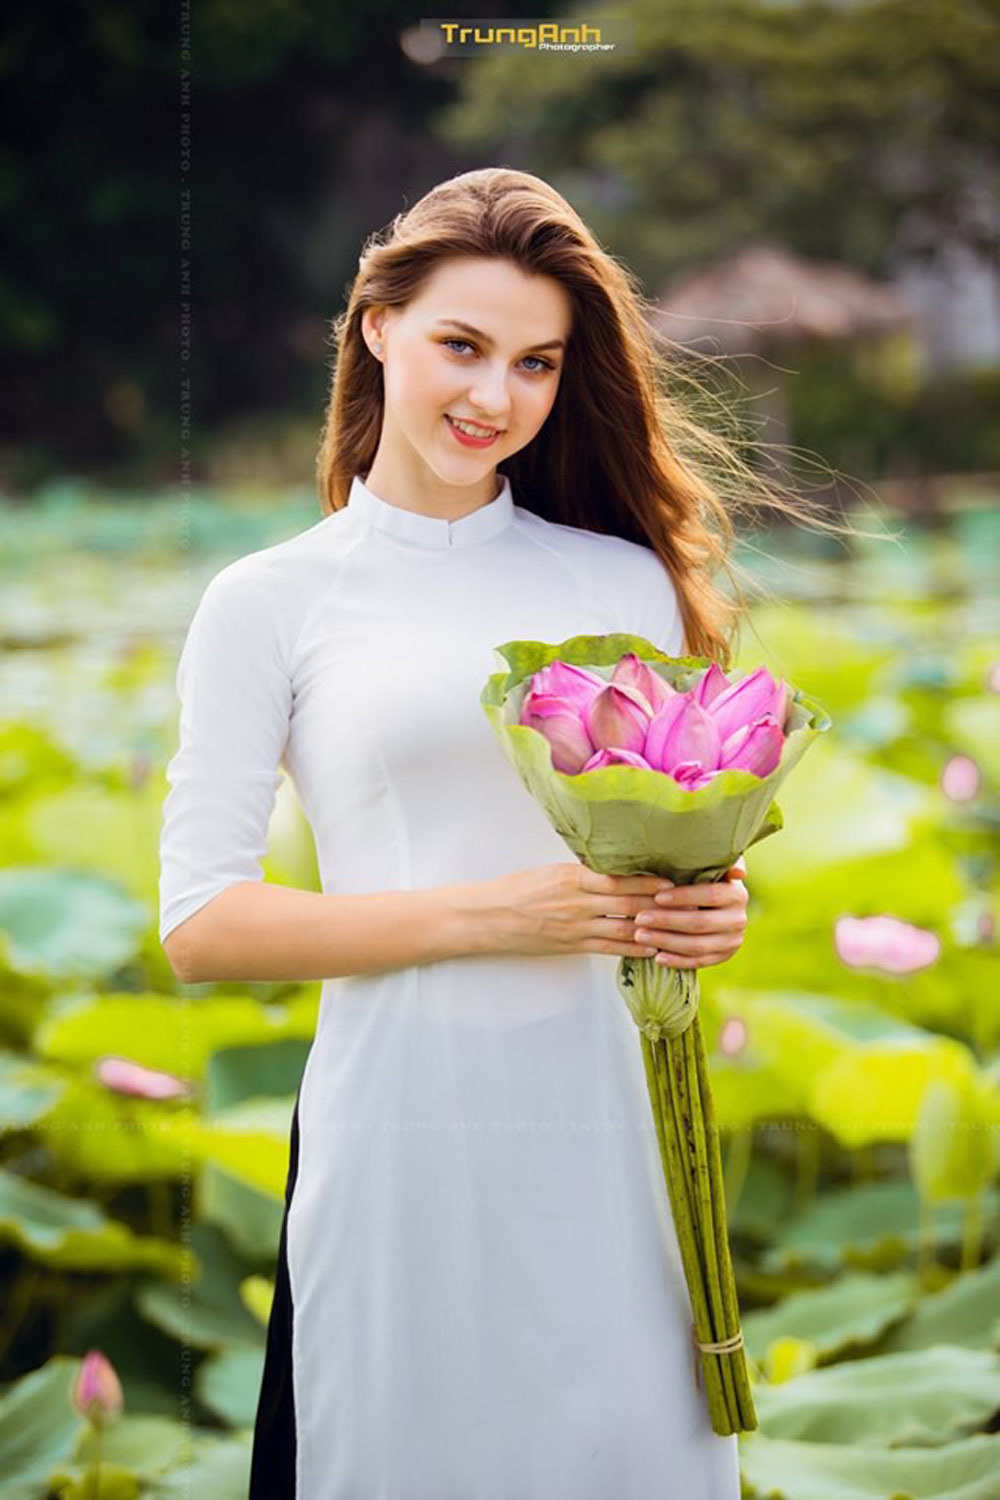 Hoa sen Hồ Tây là một trong những thước phim đẹp nhất về mùa sen tại Hà Nội. Cứ mỗi độ sụp đổ của nắng, hàng trăm bông hoa sen lại rực rỡ chao đời trên tảng đá đồi sen bên bờ hồ Tây. Hãy cùng đắm chìm vào vẻ đẹp tuyệt vời này nhé!